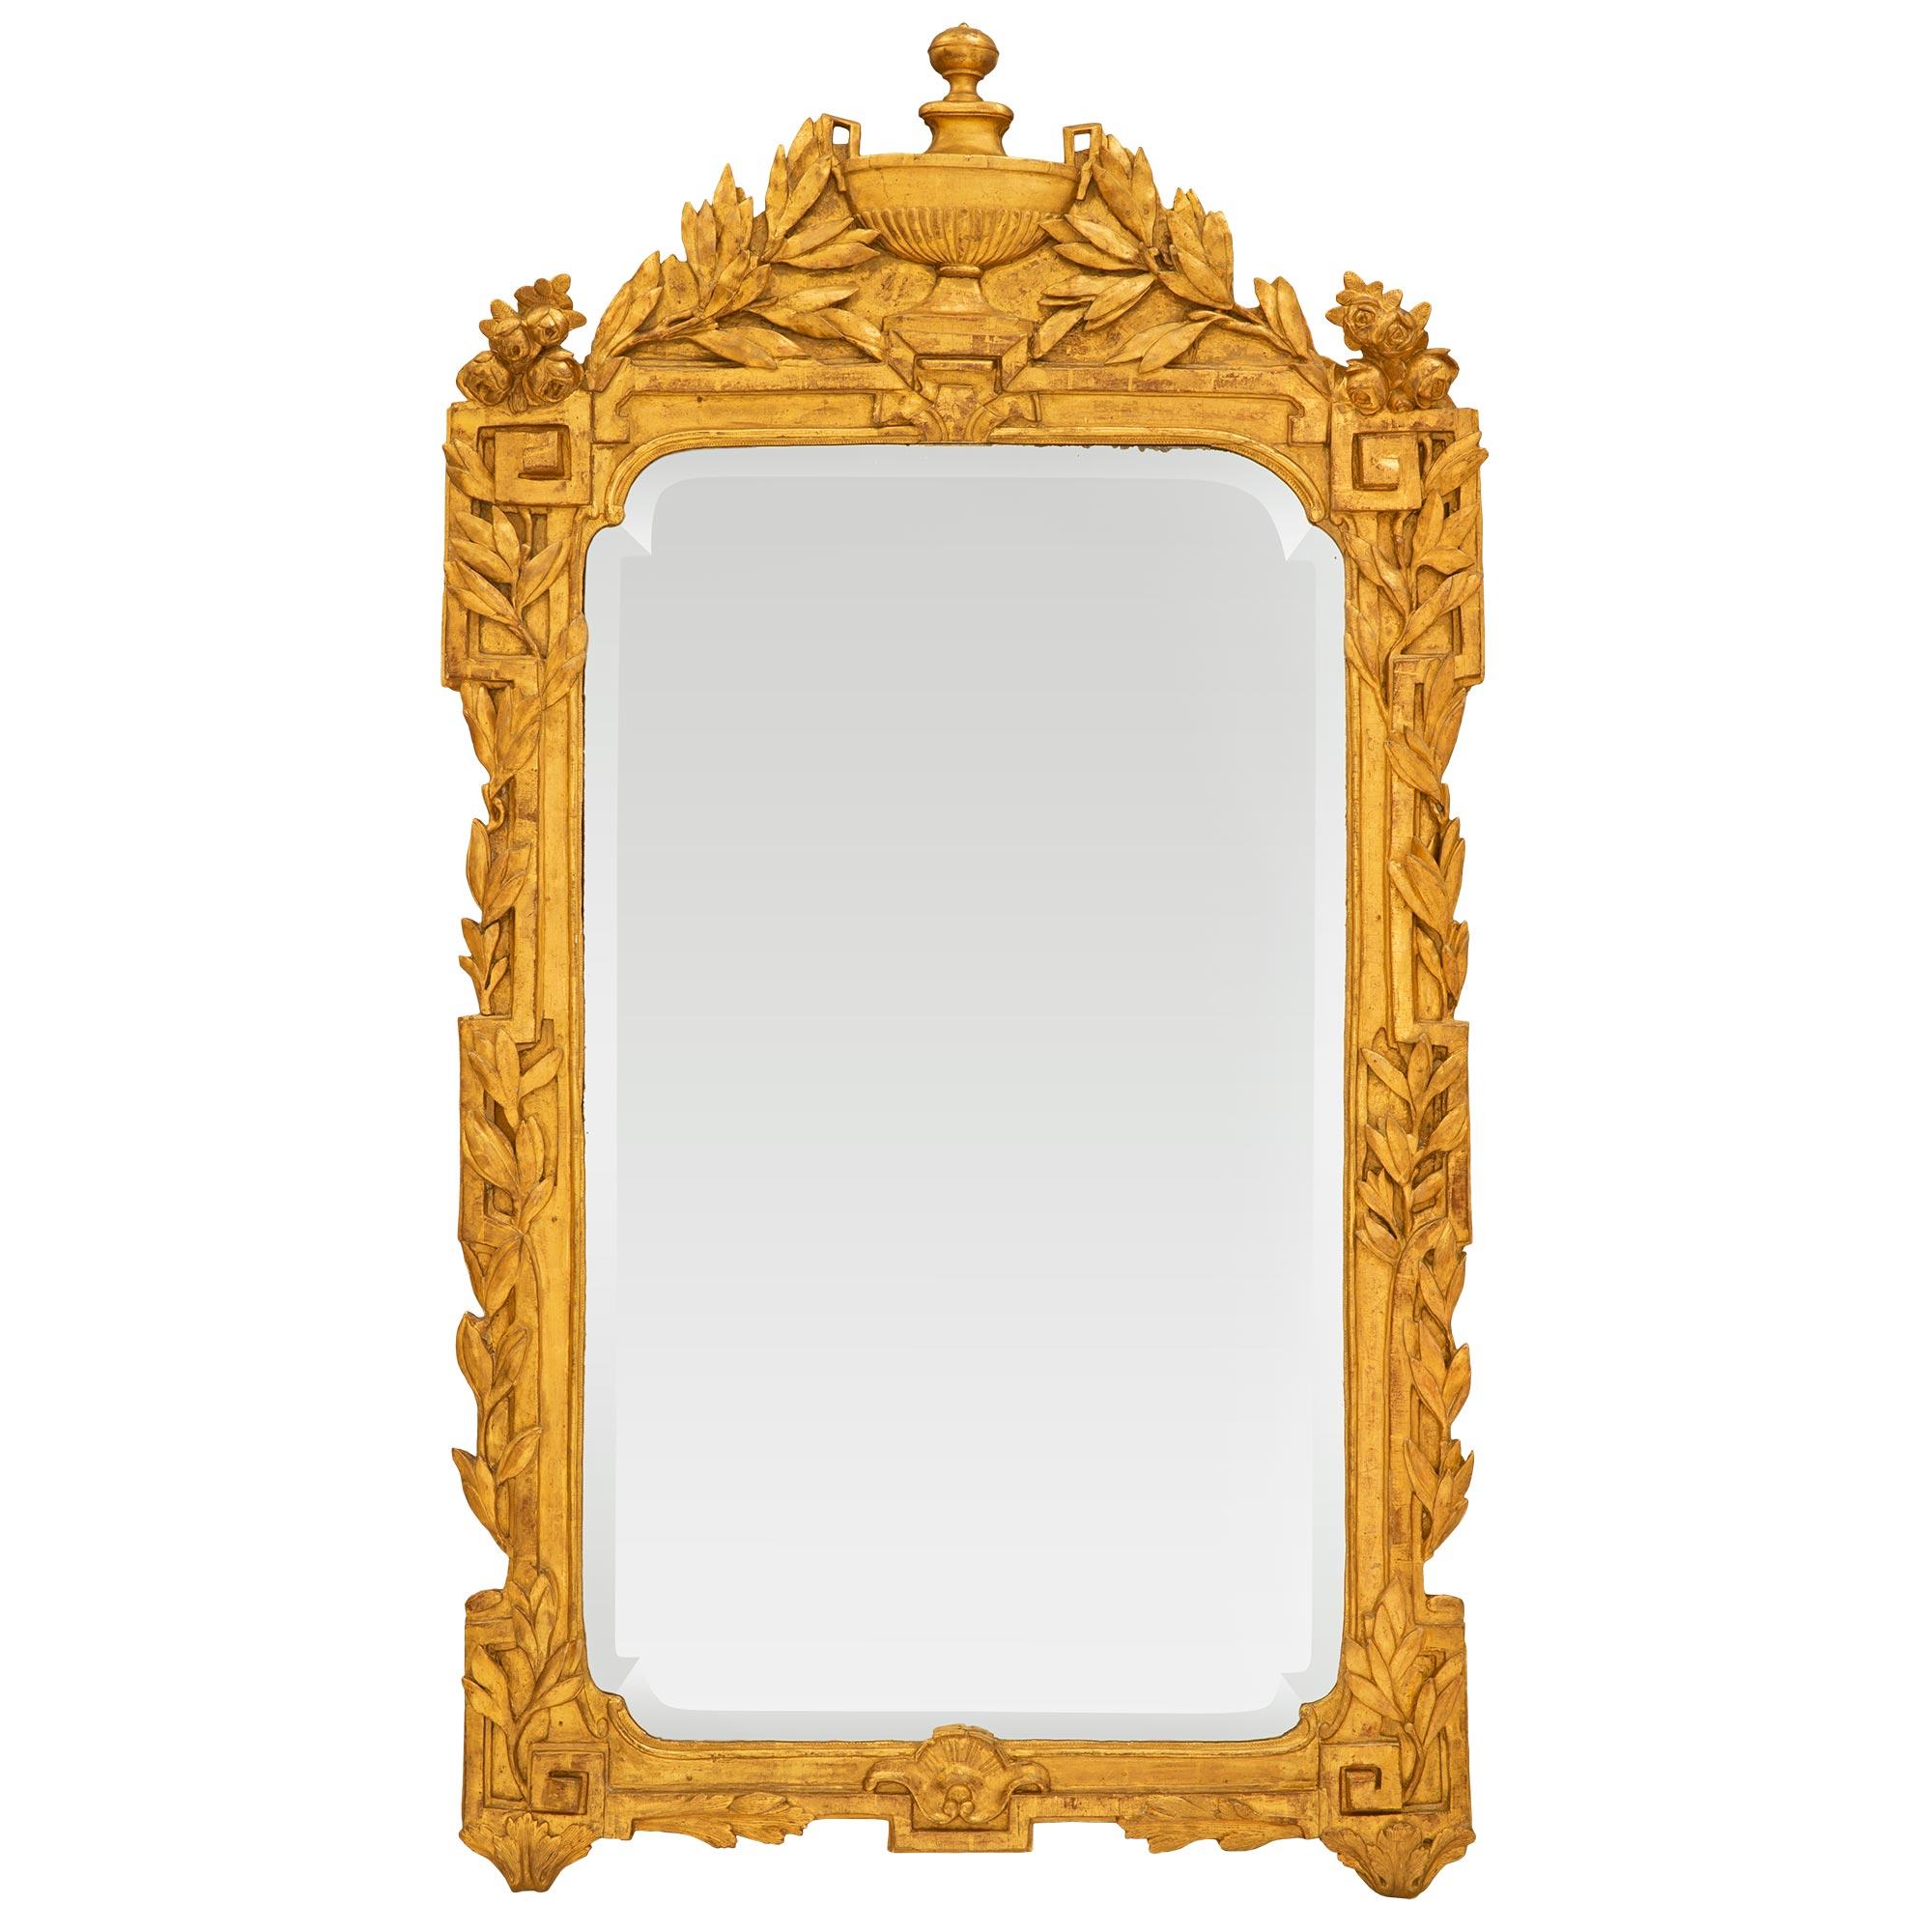 Superbe miroir en bois doré de la période Régence du XVIIIe siècle. Le miroir est doté de la plaque biseautée d'origine dans un cadre en bois doré. Le cadre présente un motif de clé grecque orné de guirlandes feuillagées finement sculptées de chaque